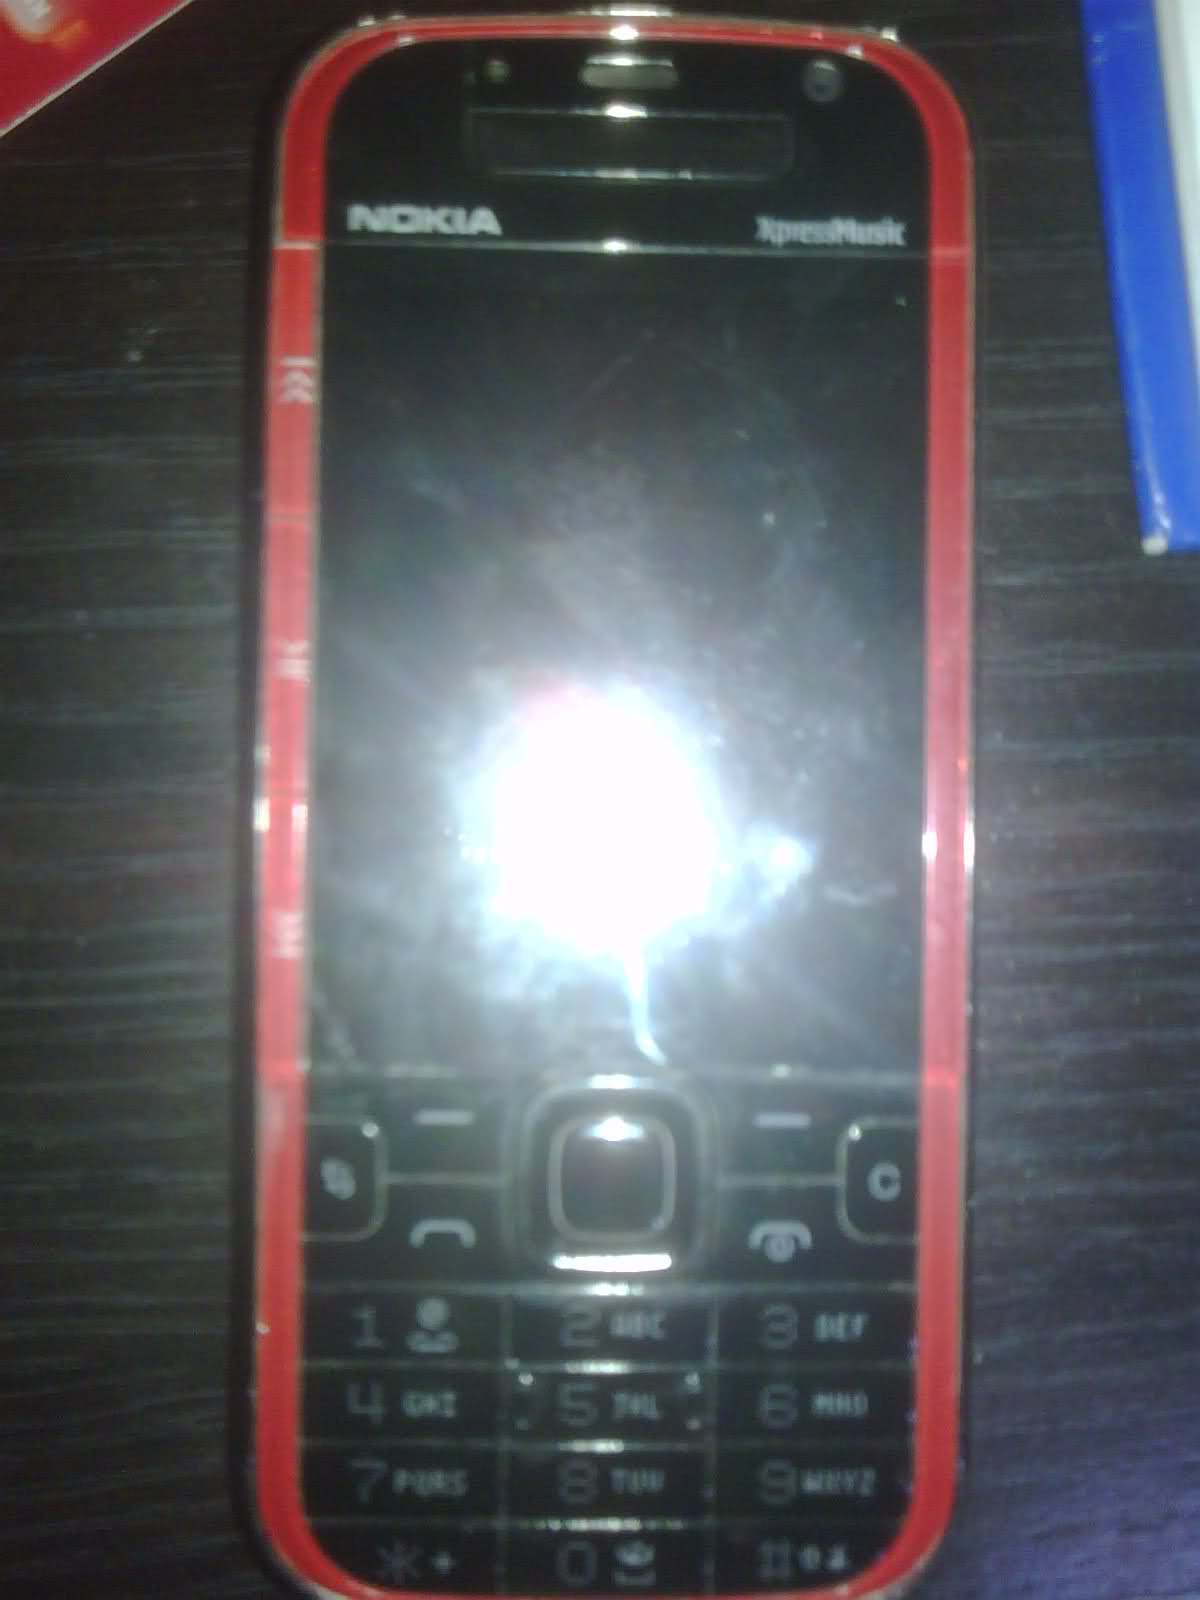  Satılık Nokia 5730 XpressMusic - KVK Garantili Güncel